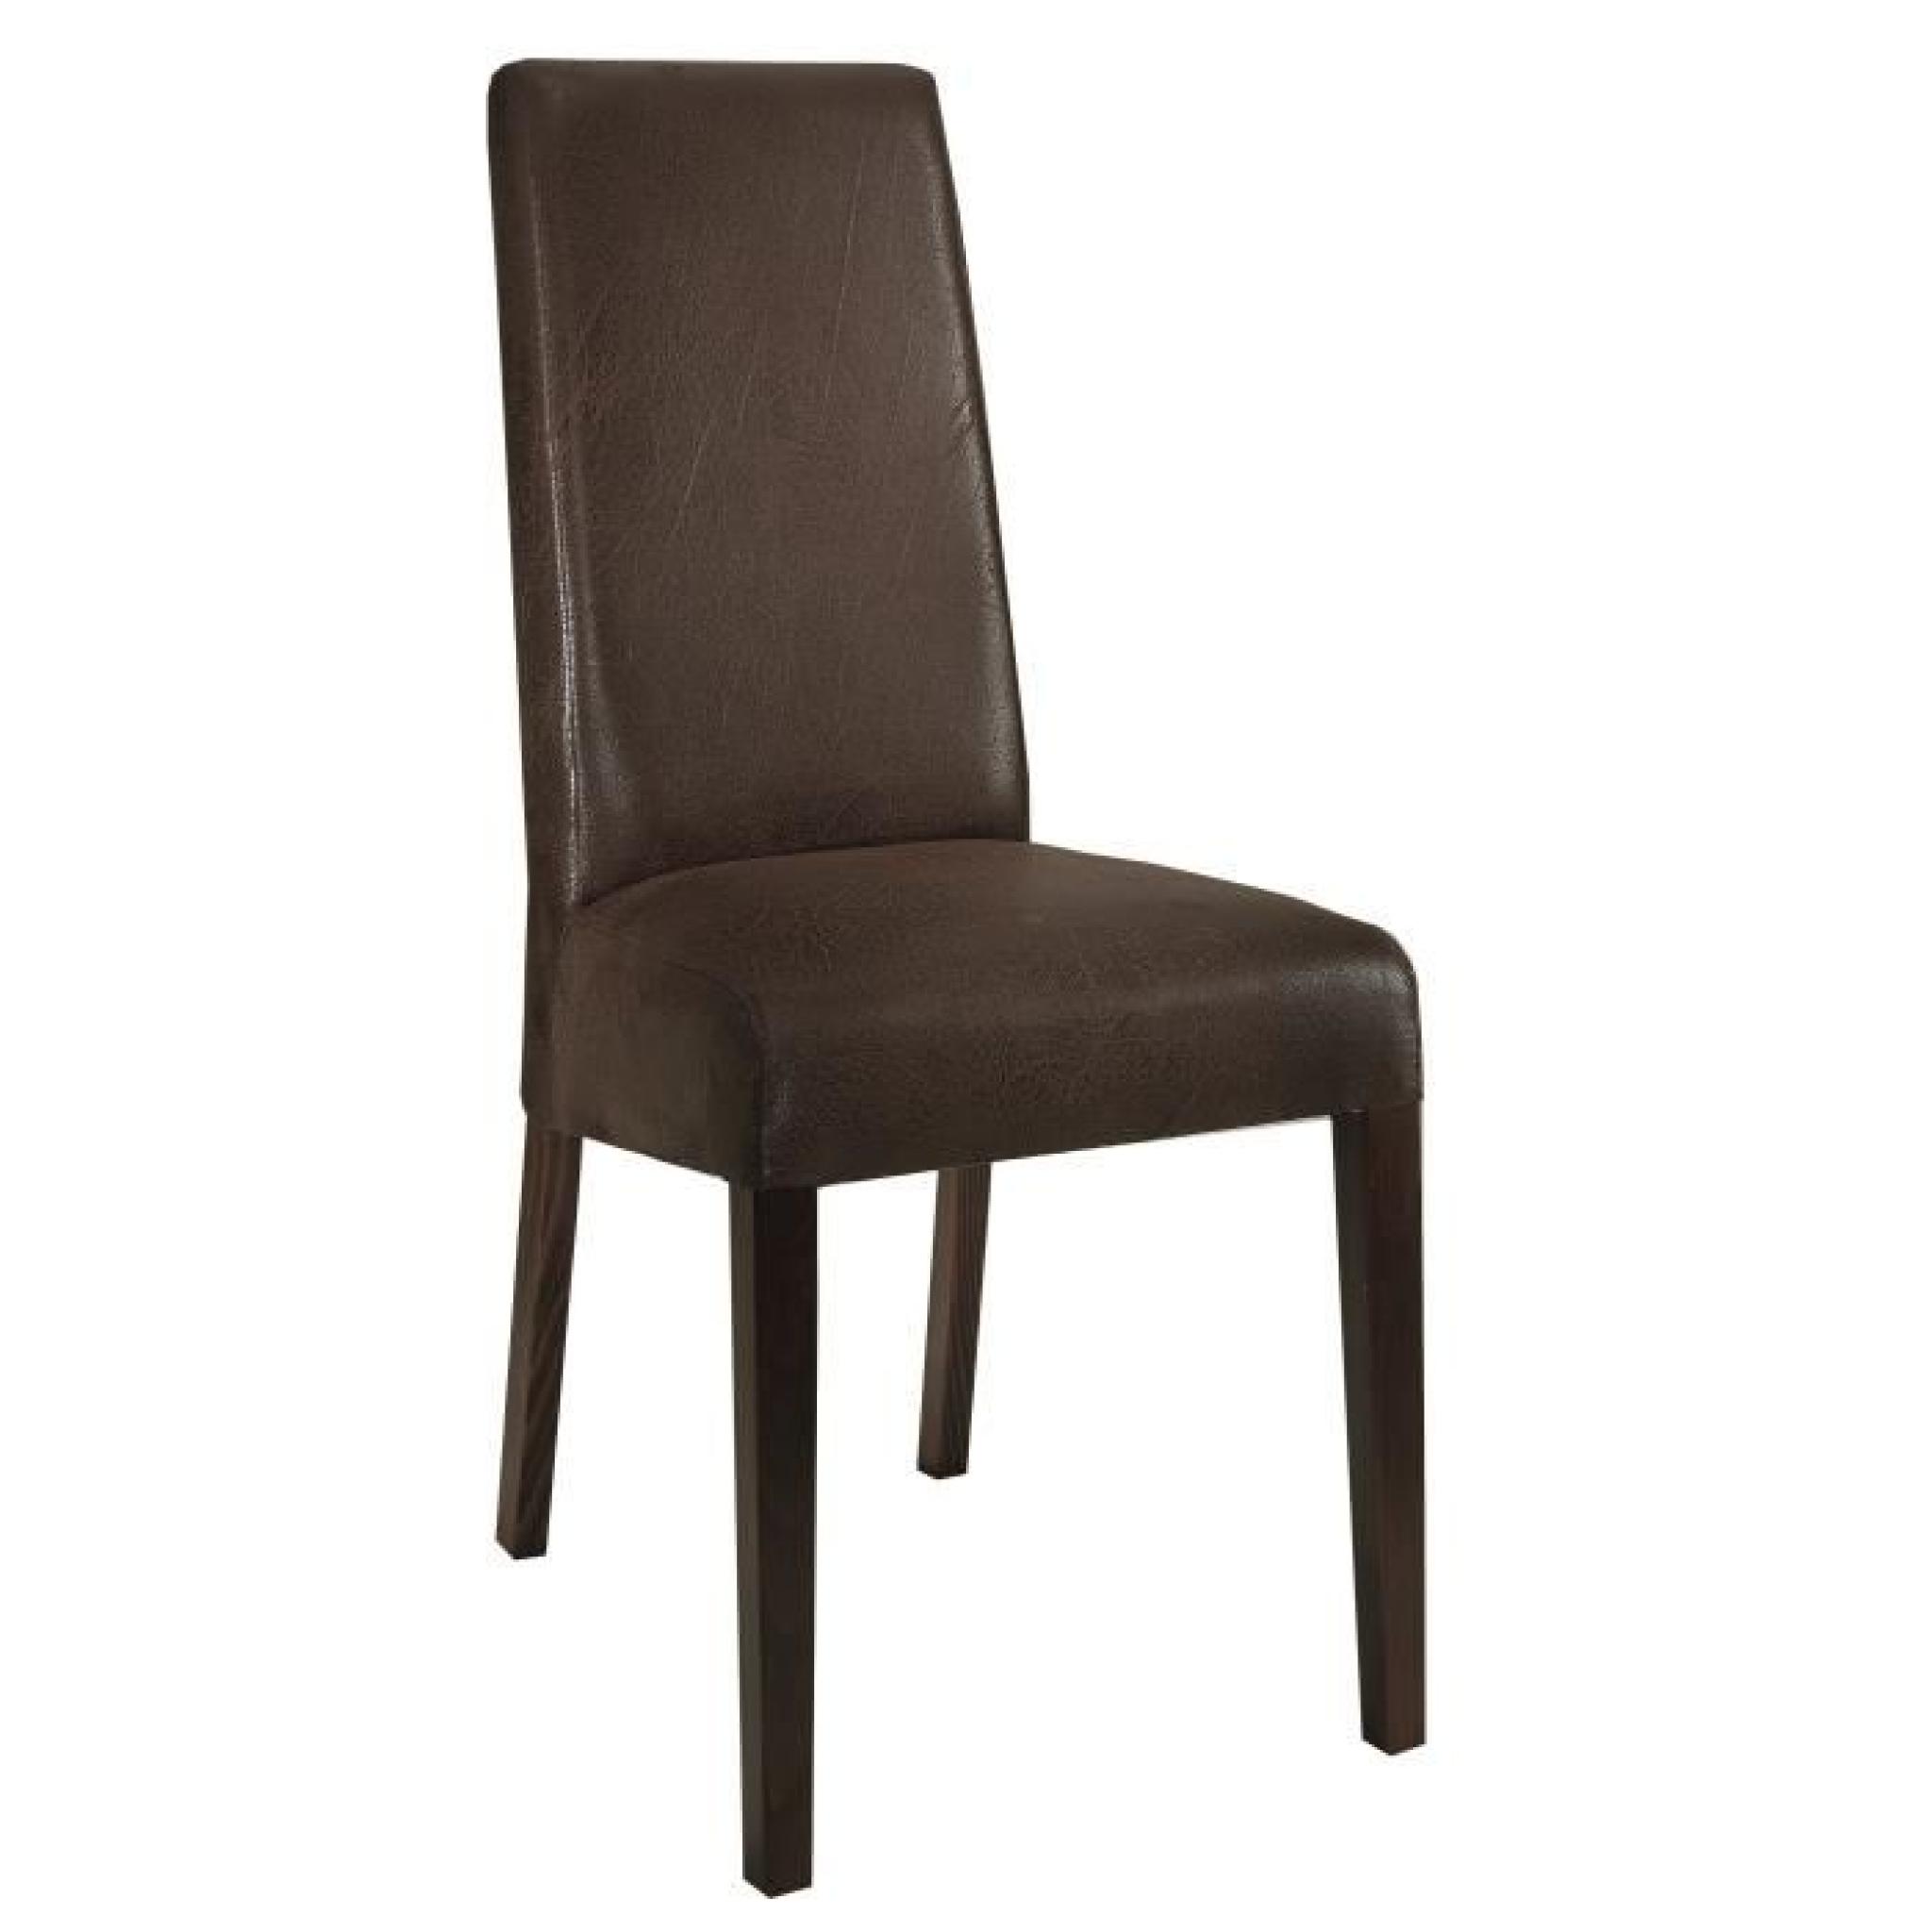 Table en bois et gris laqué 160 cm + 4 chaises en tissu brun foncé pas cher